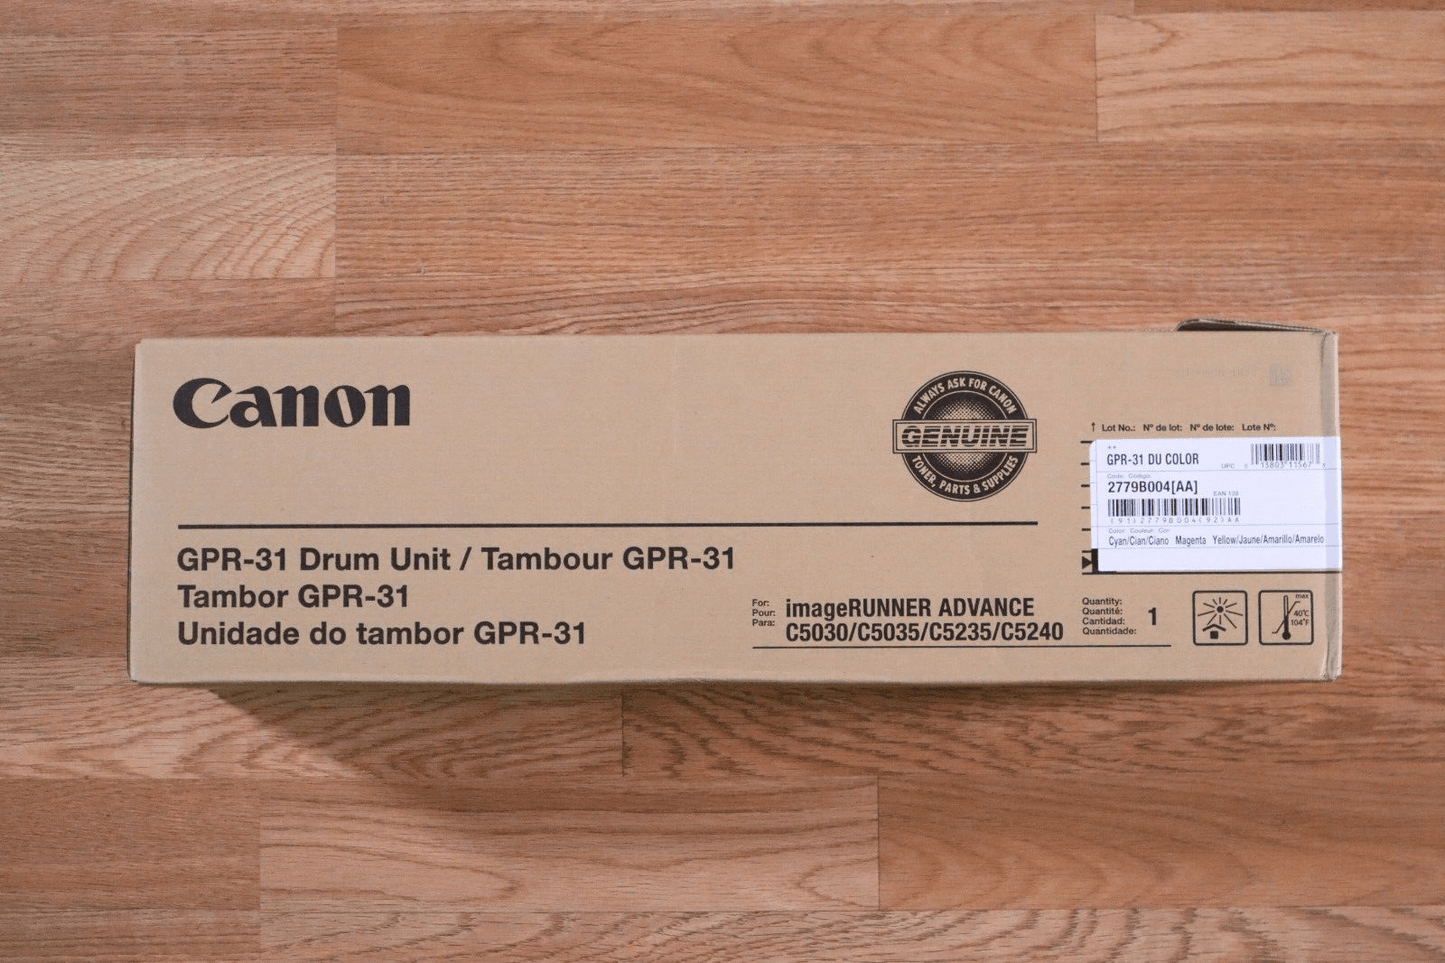 Genuine Canon GPR-31 Color Drum MC:2779B004[AA] iR ADV C5030/C5035/C5235/C5240 - copier-clearance-center